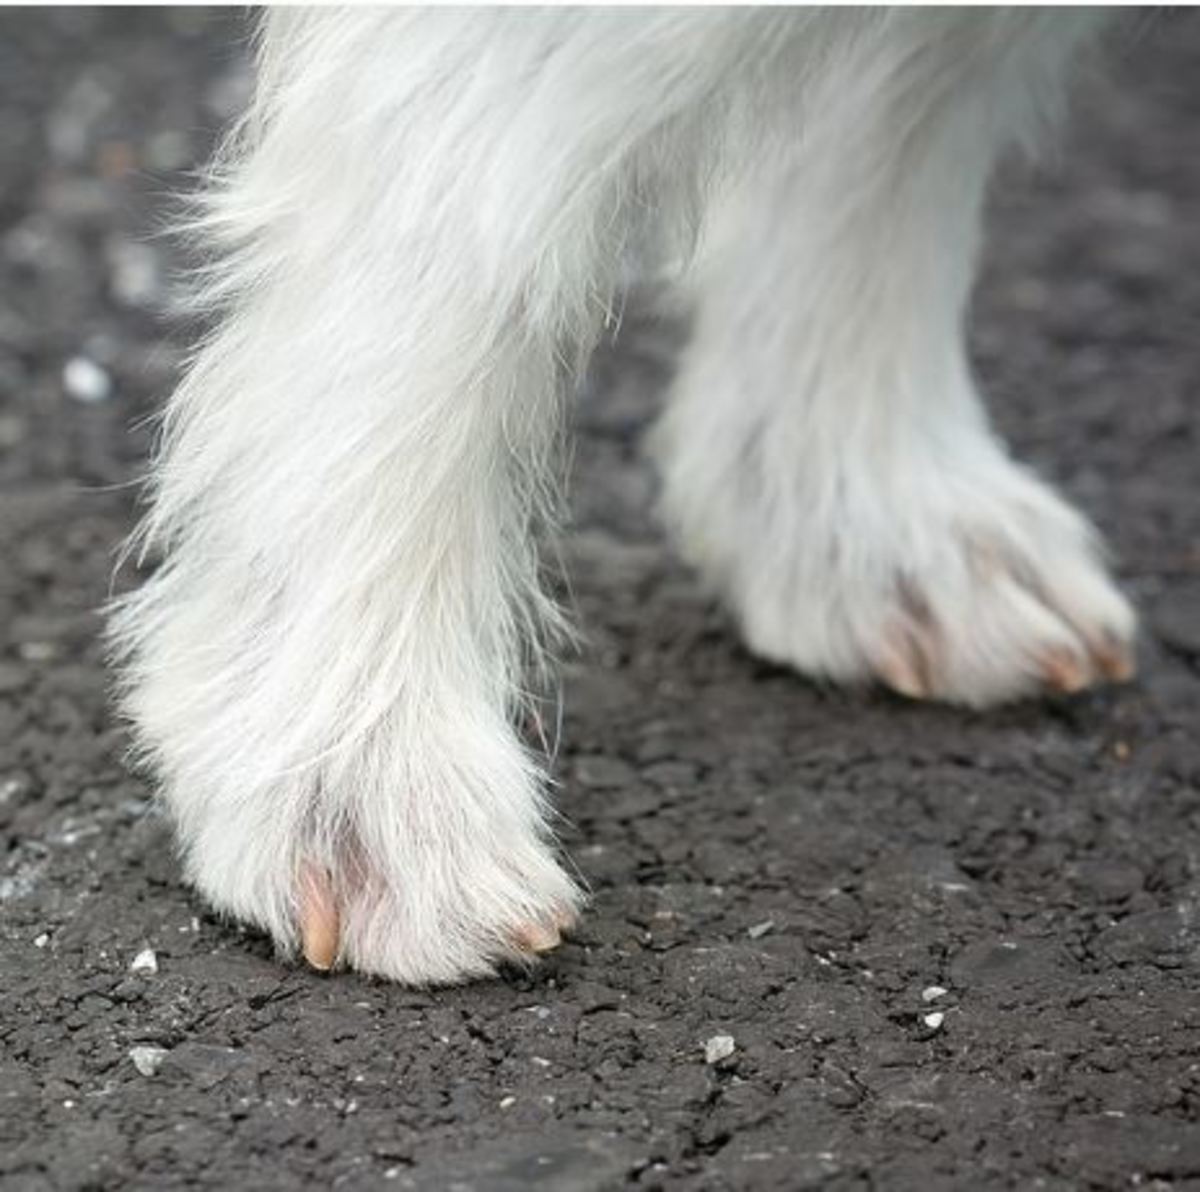 dog leg swelling